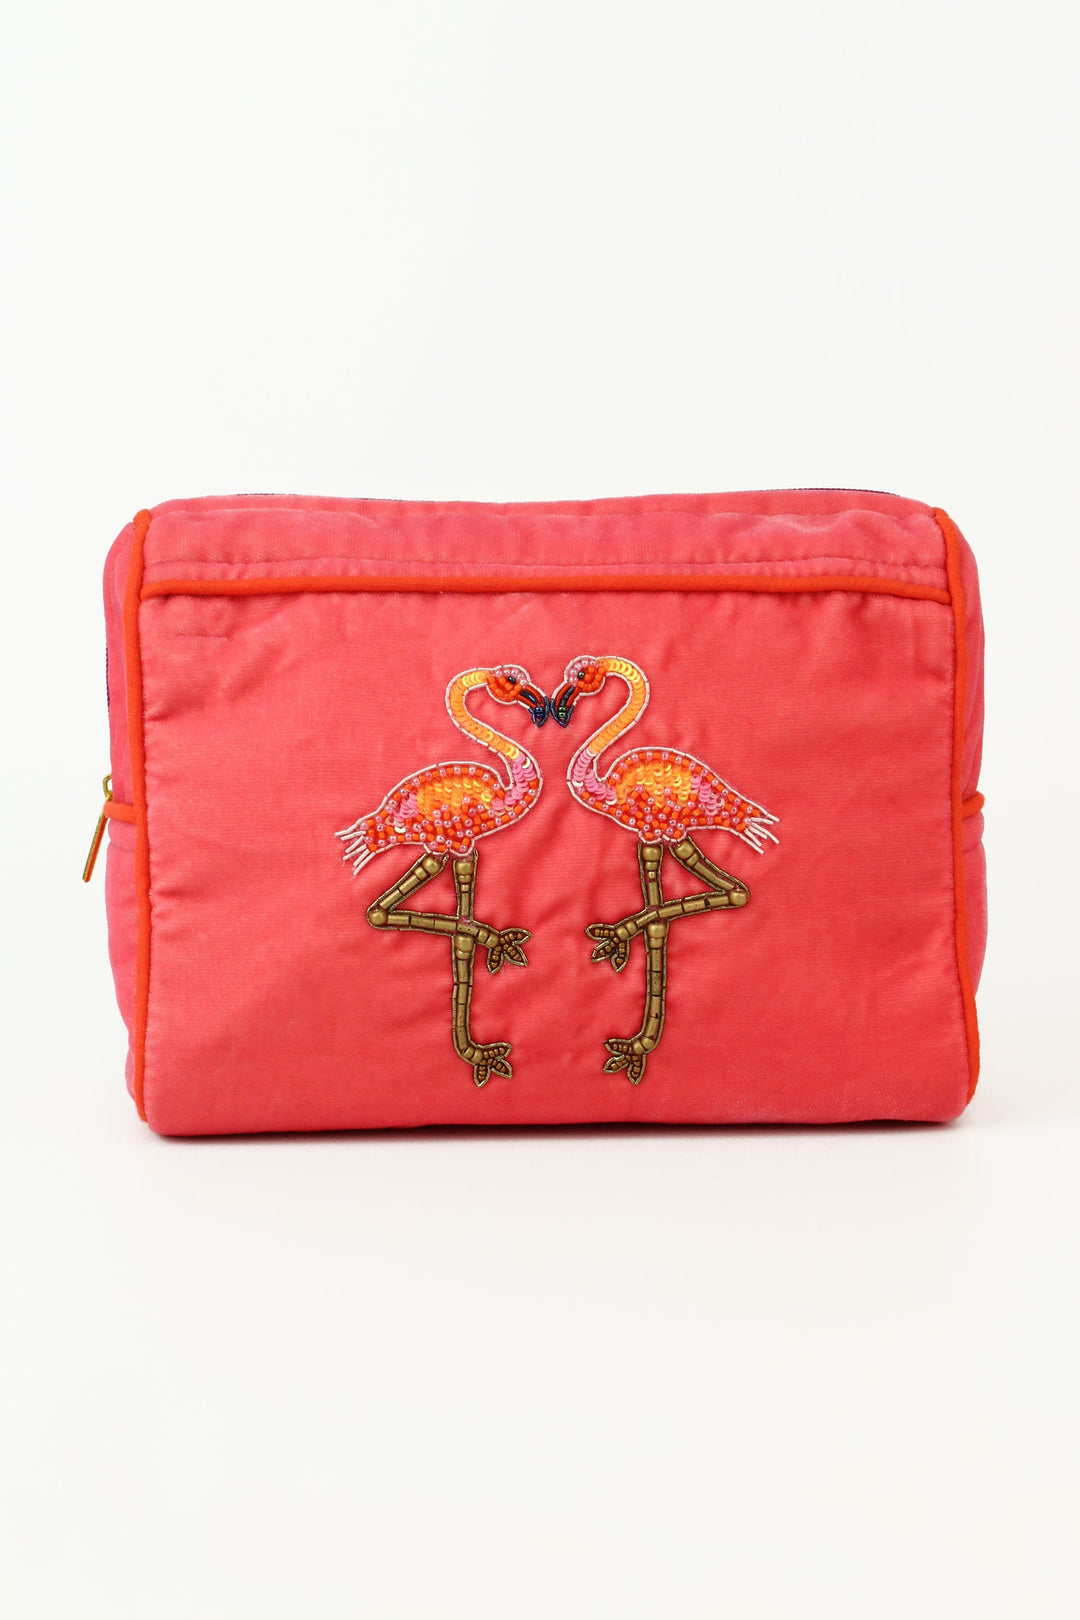 Pink Flamingo Cosmetic Bag